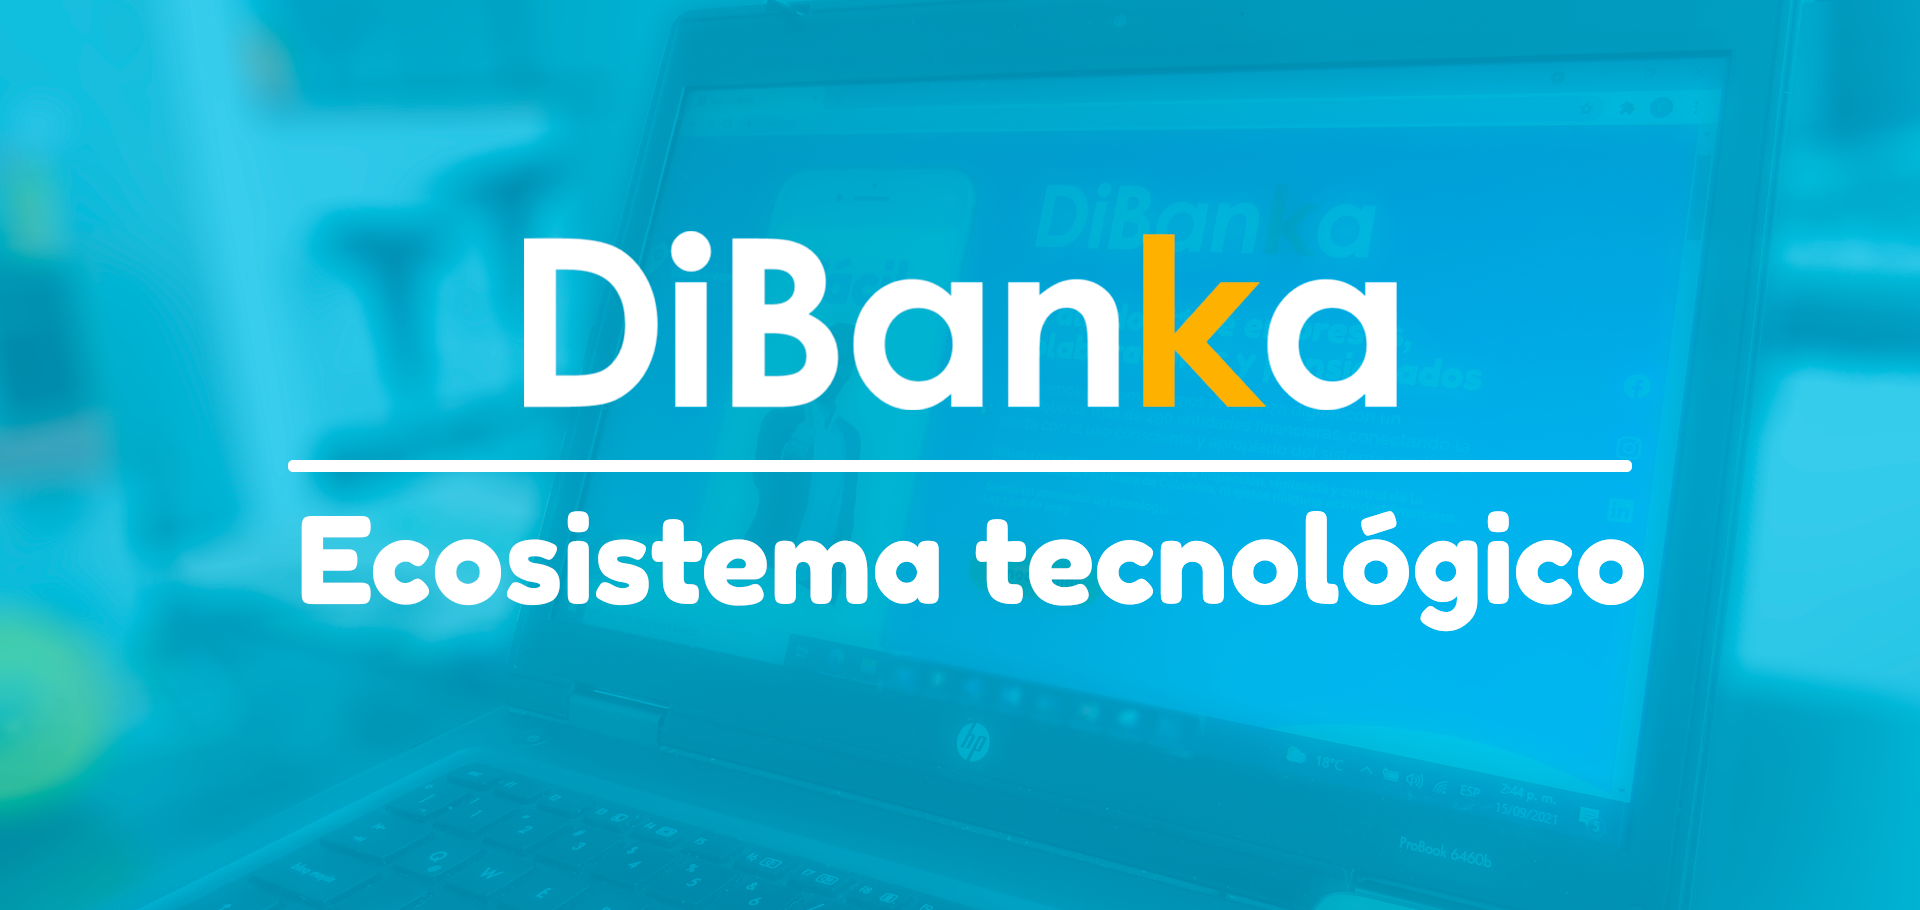 DiBanka democratiza el acceso a los servicios financieros con el apoyo de Azure